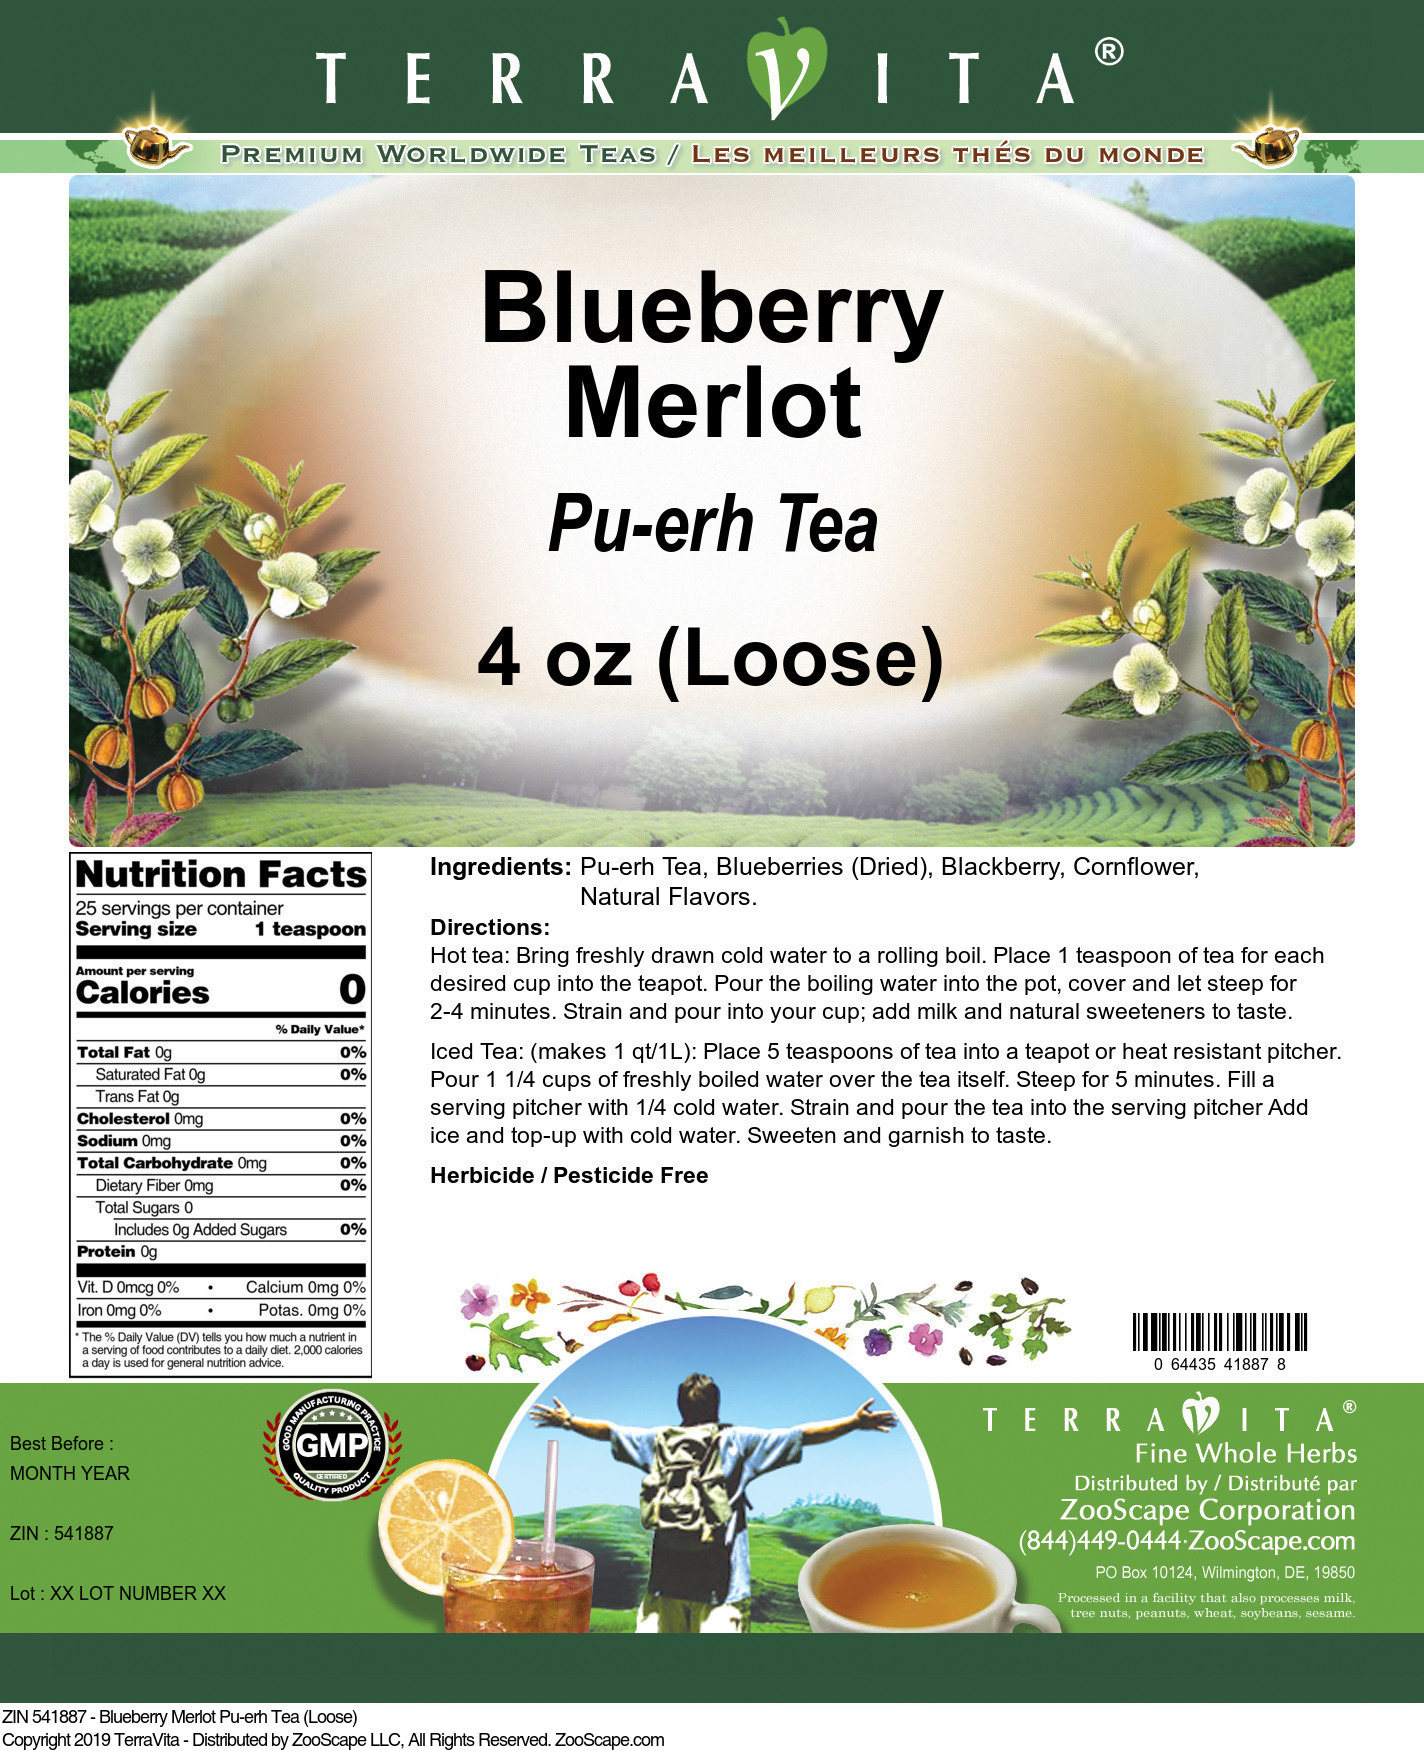 Blueberry Merlot Pu-erh Tea (Loose) - Label